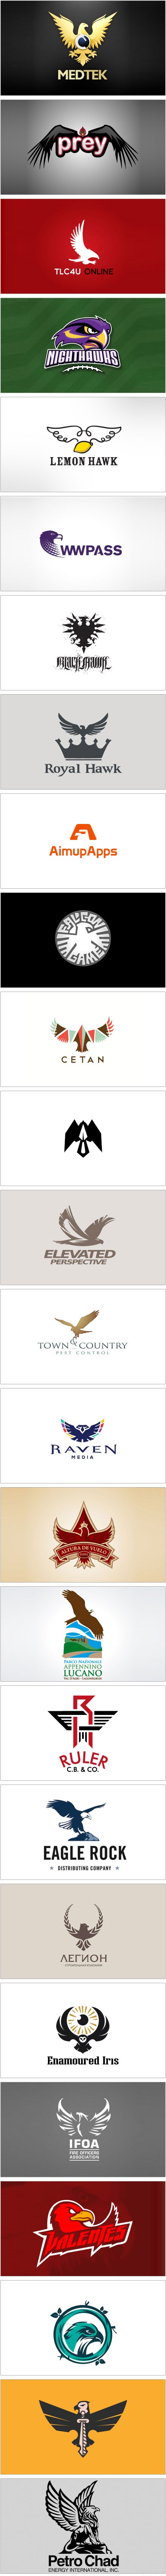 一系列鹰元素的Logo设计